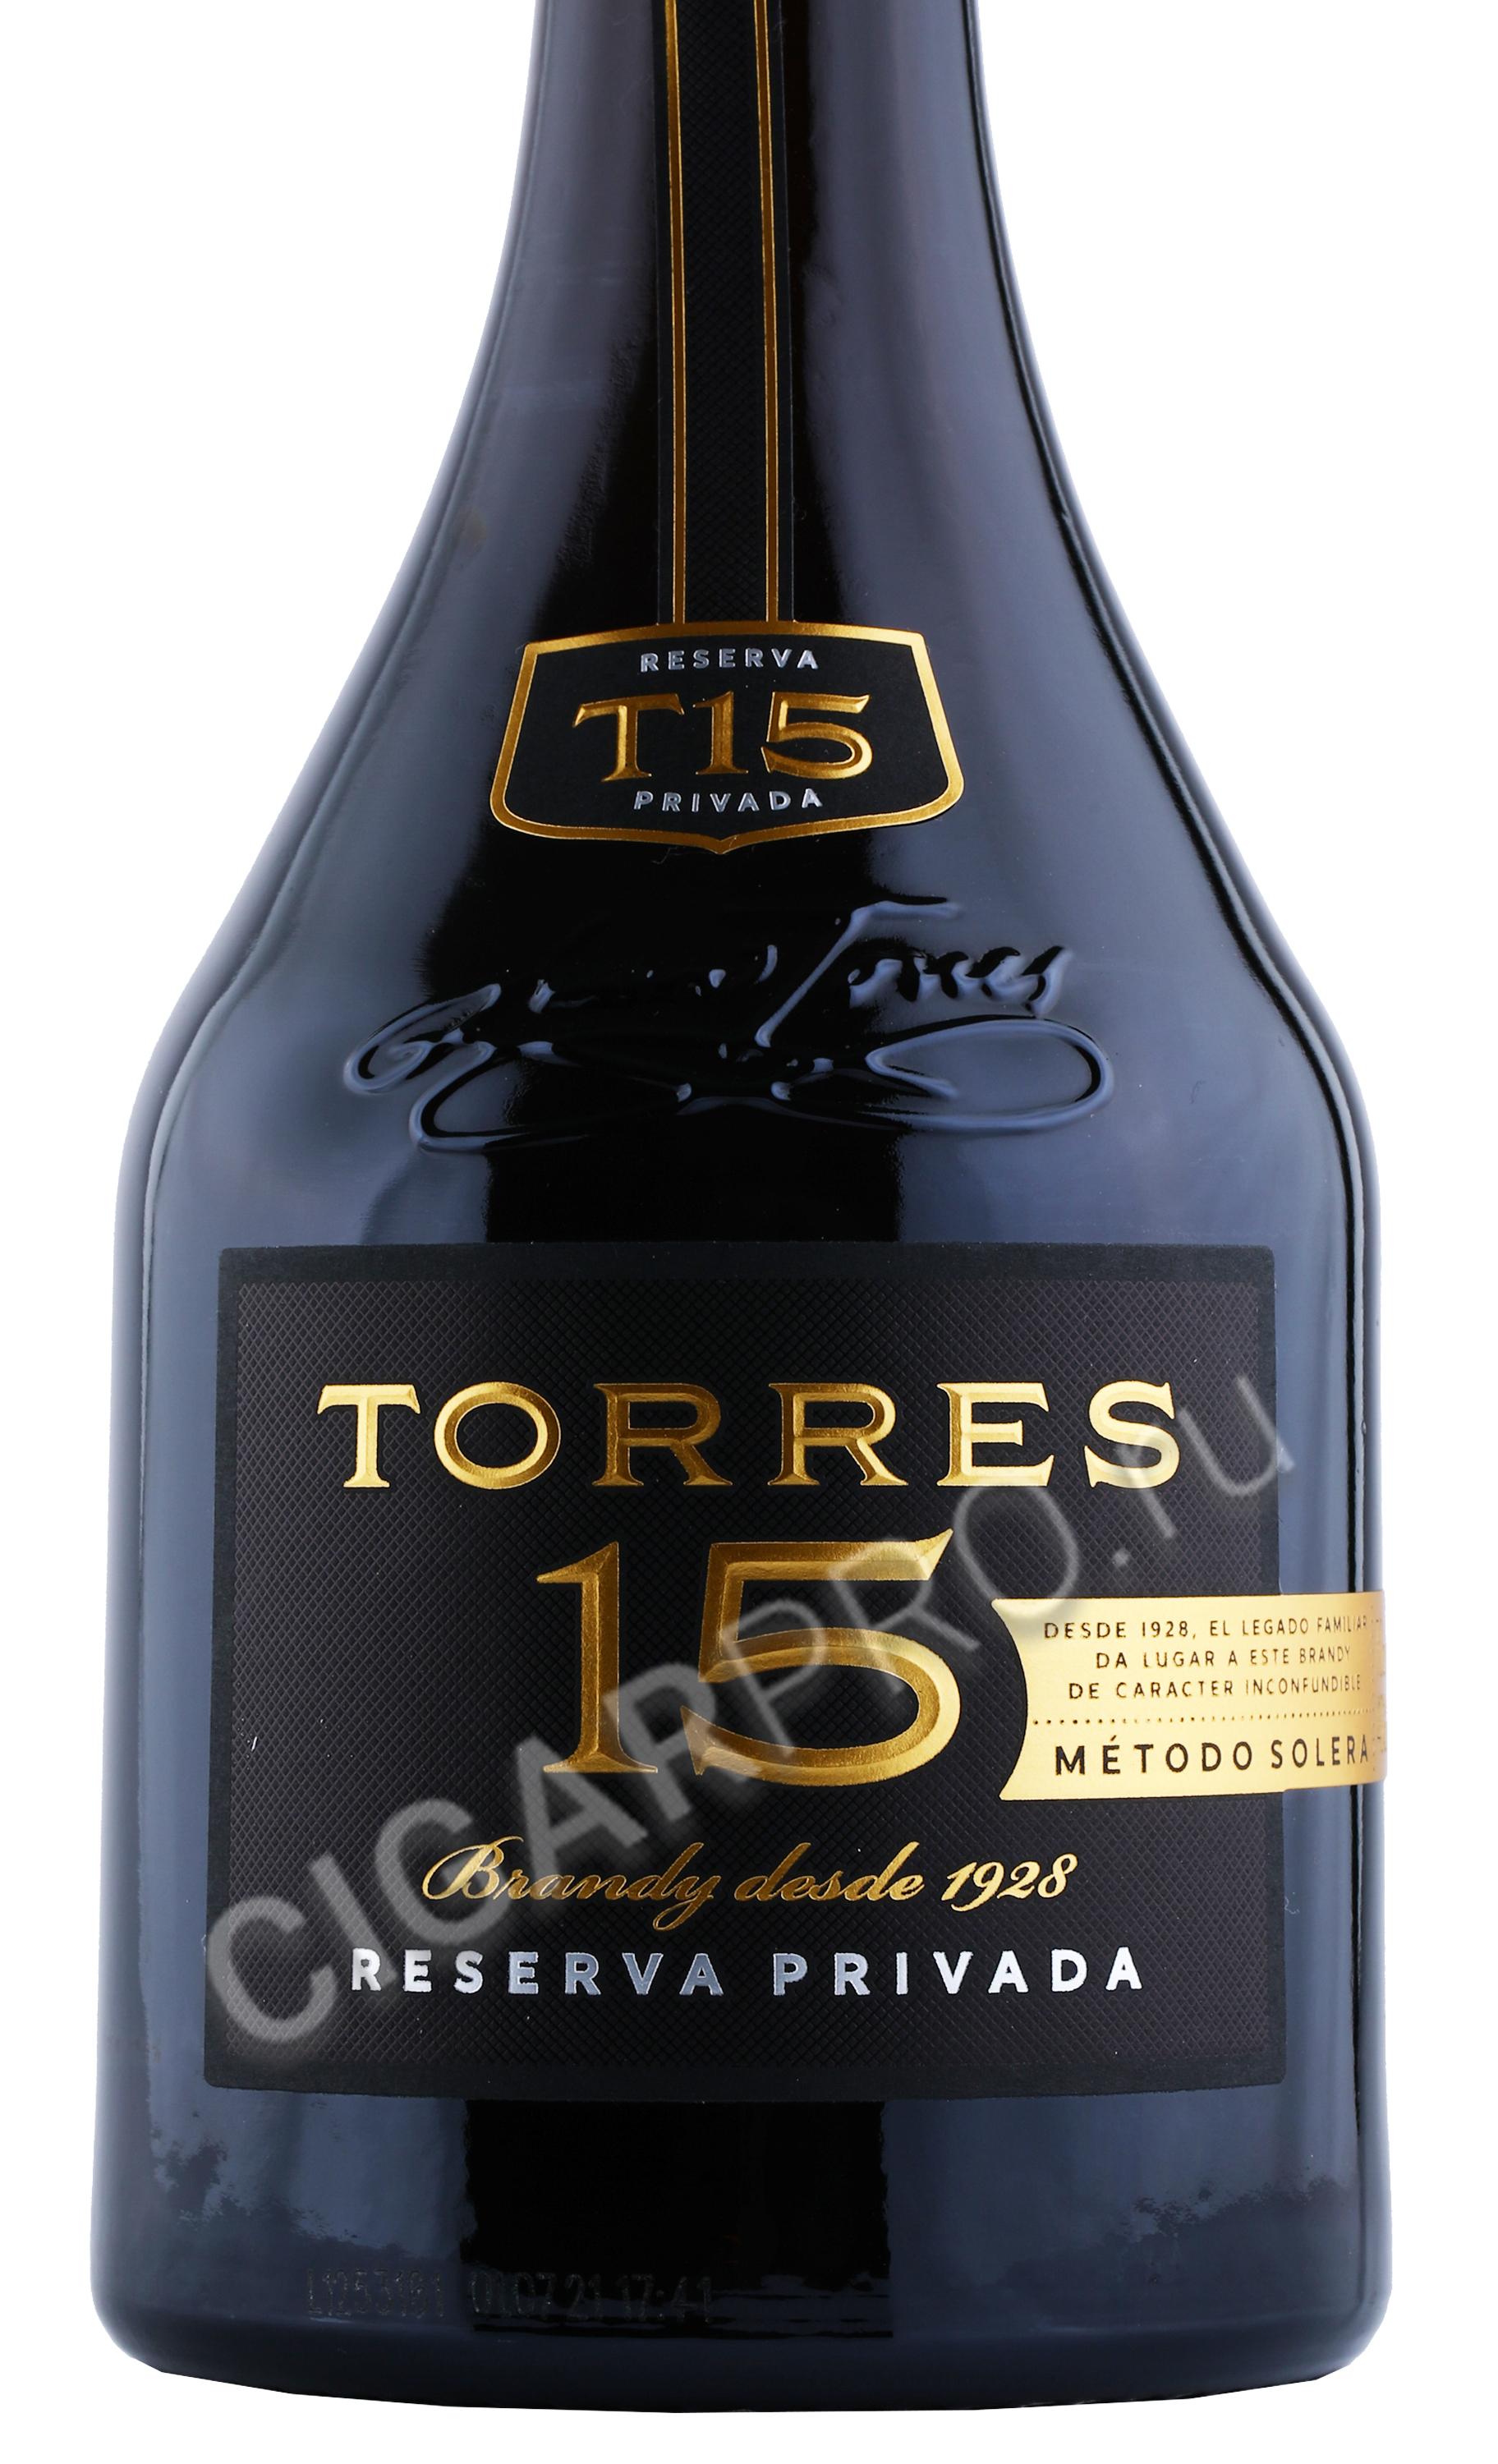 Torres 15 0.7. Бренди Торрес 15 резерва привада. Торес бренди 15 лет. Бренди Miguel Torres 15 reserva. Torres 15 Brandy 0.7.